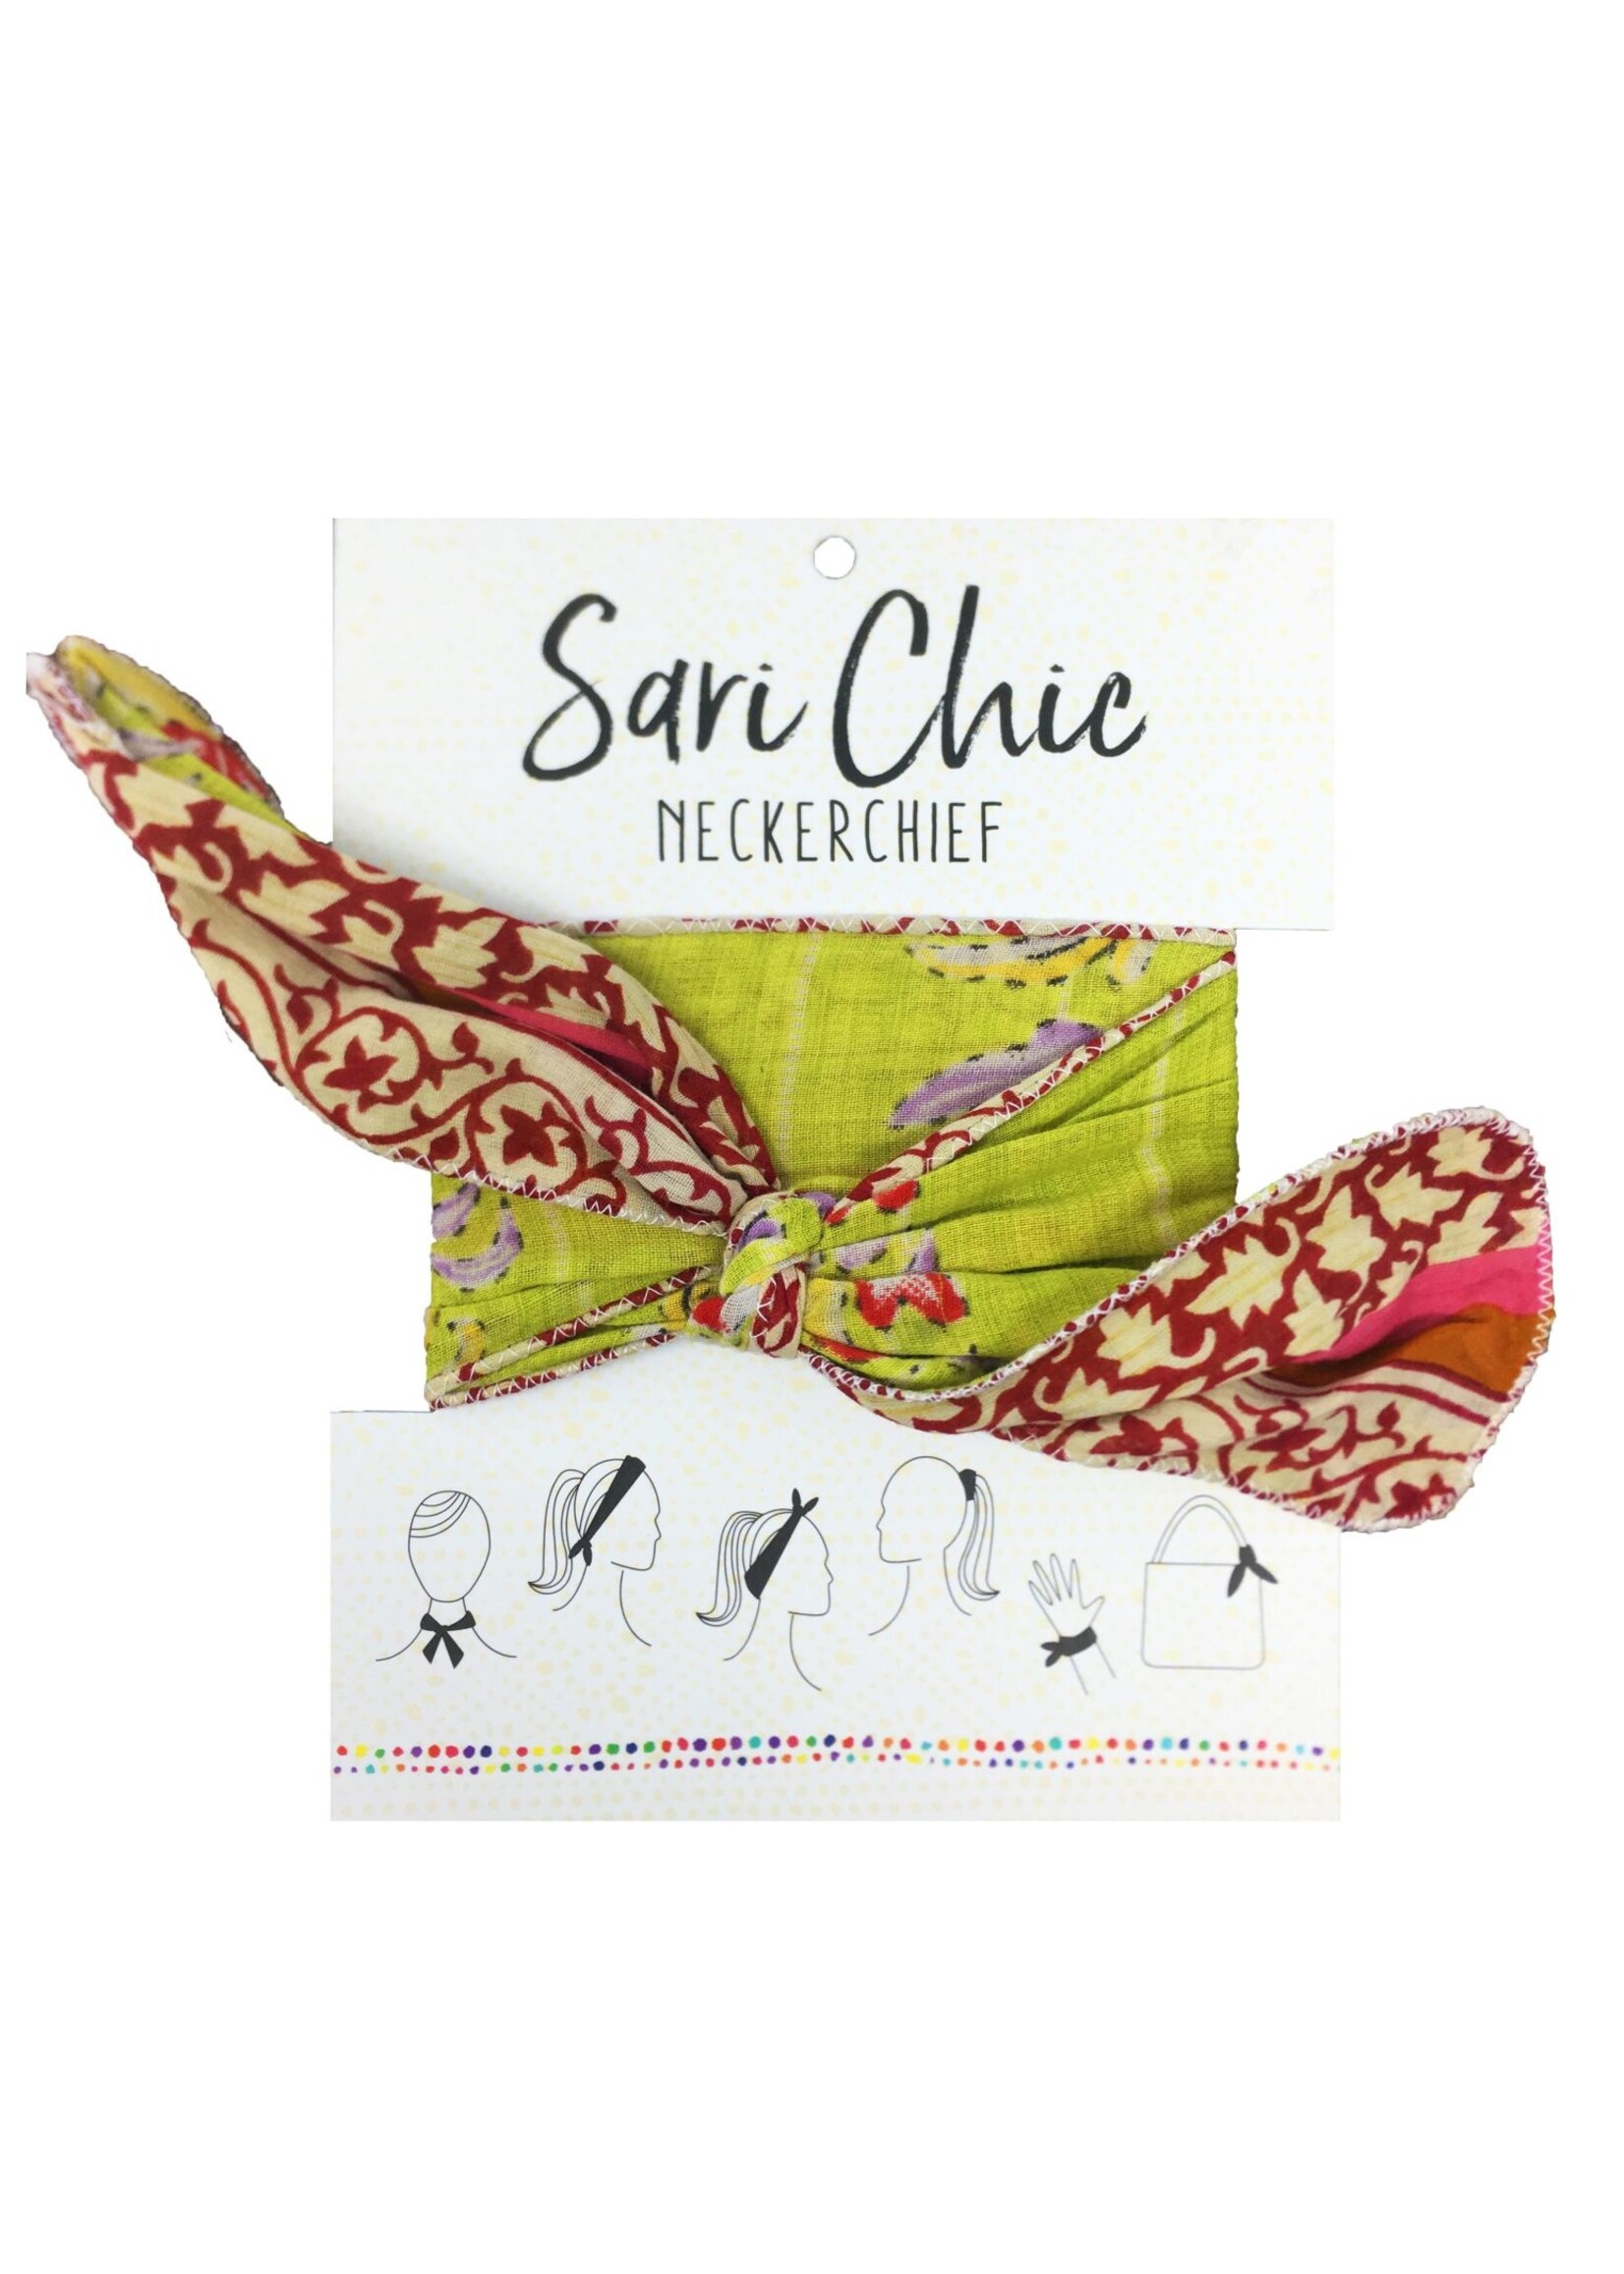 Neckerchief - Sari Chic